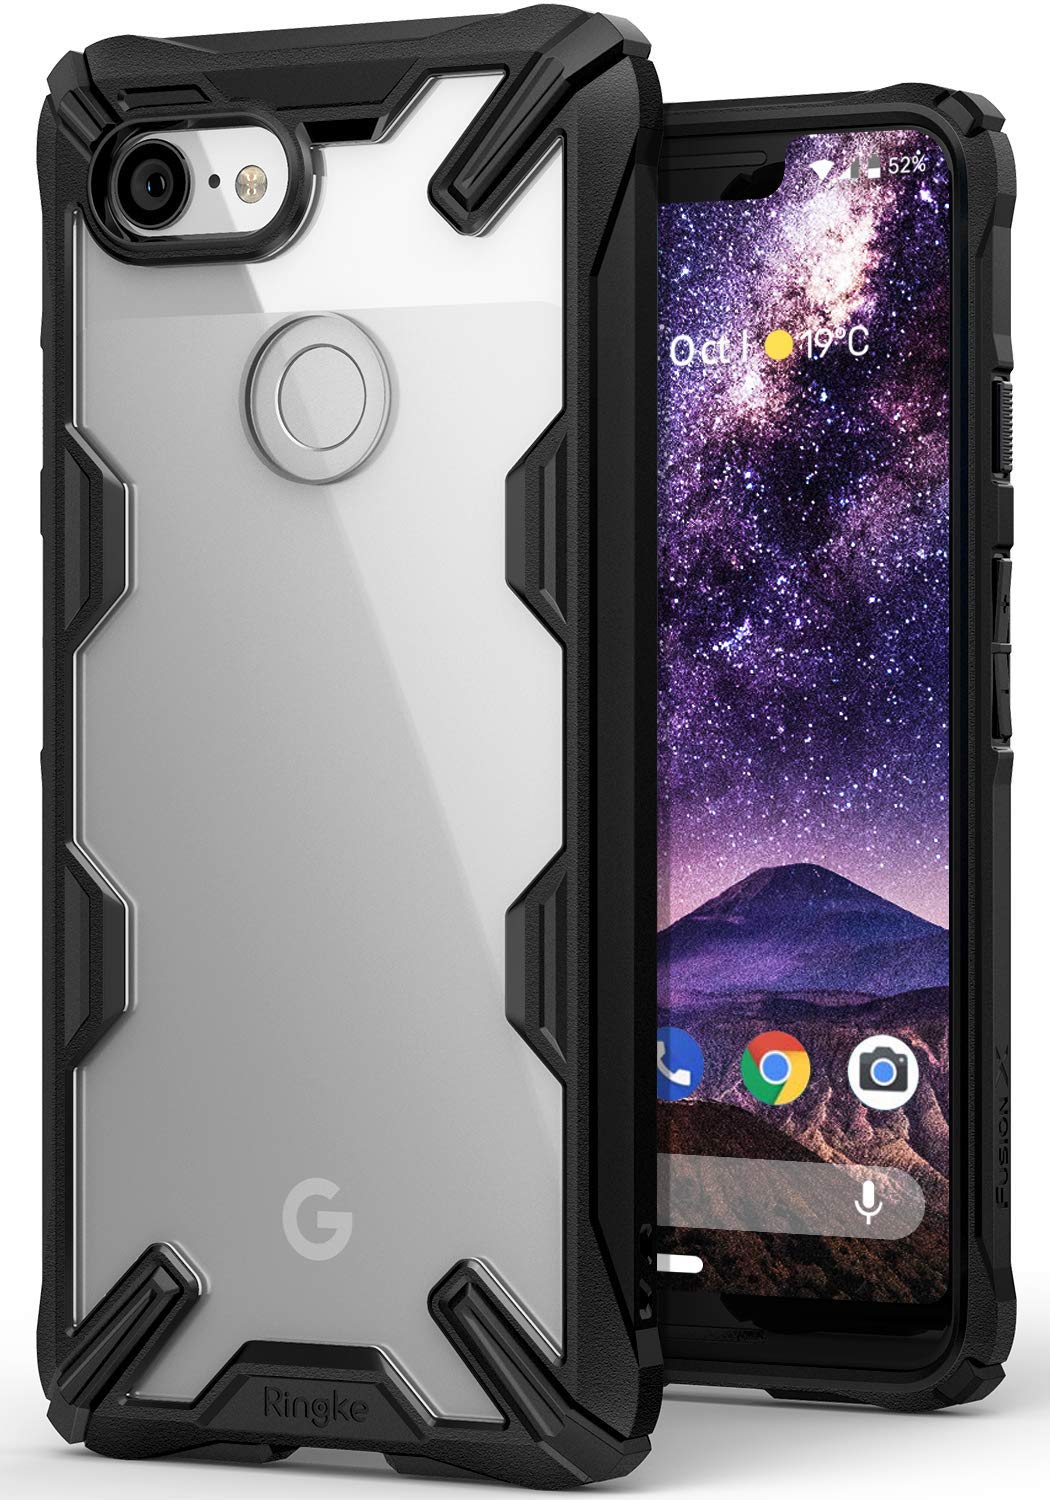 スマートフォン/携帯電話 スマートフォン本体 The best Google Pixel 3 XL cases you can get in 2022 - Android 